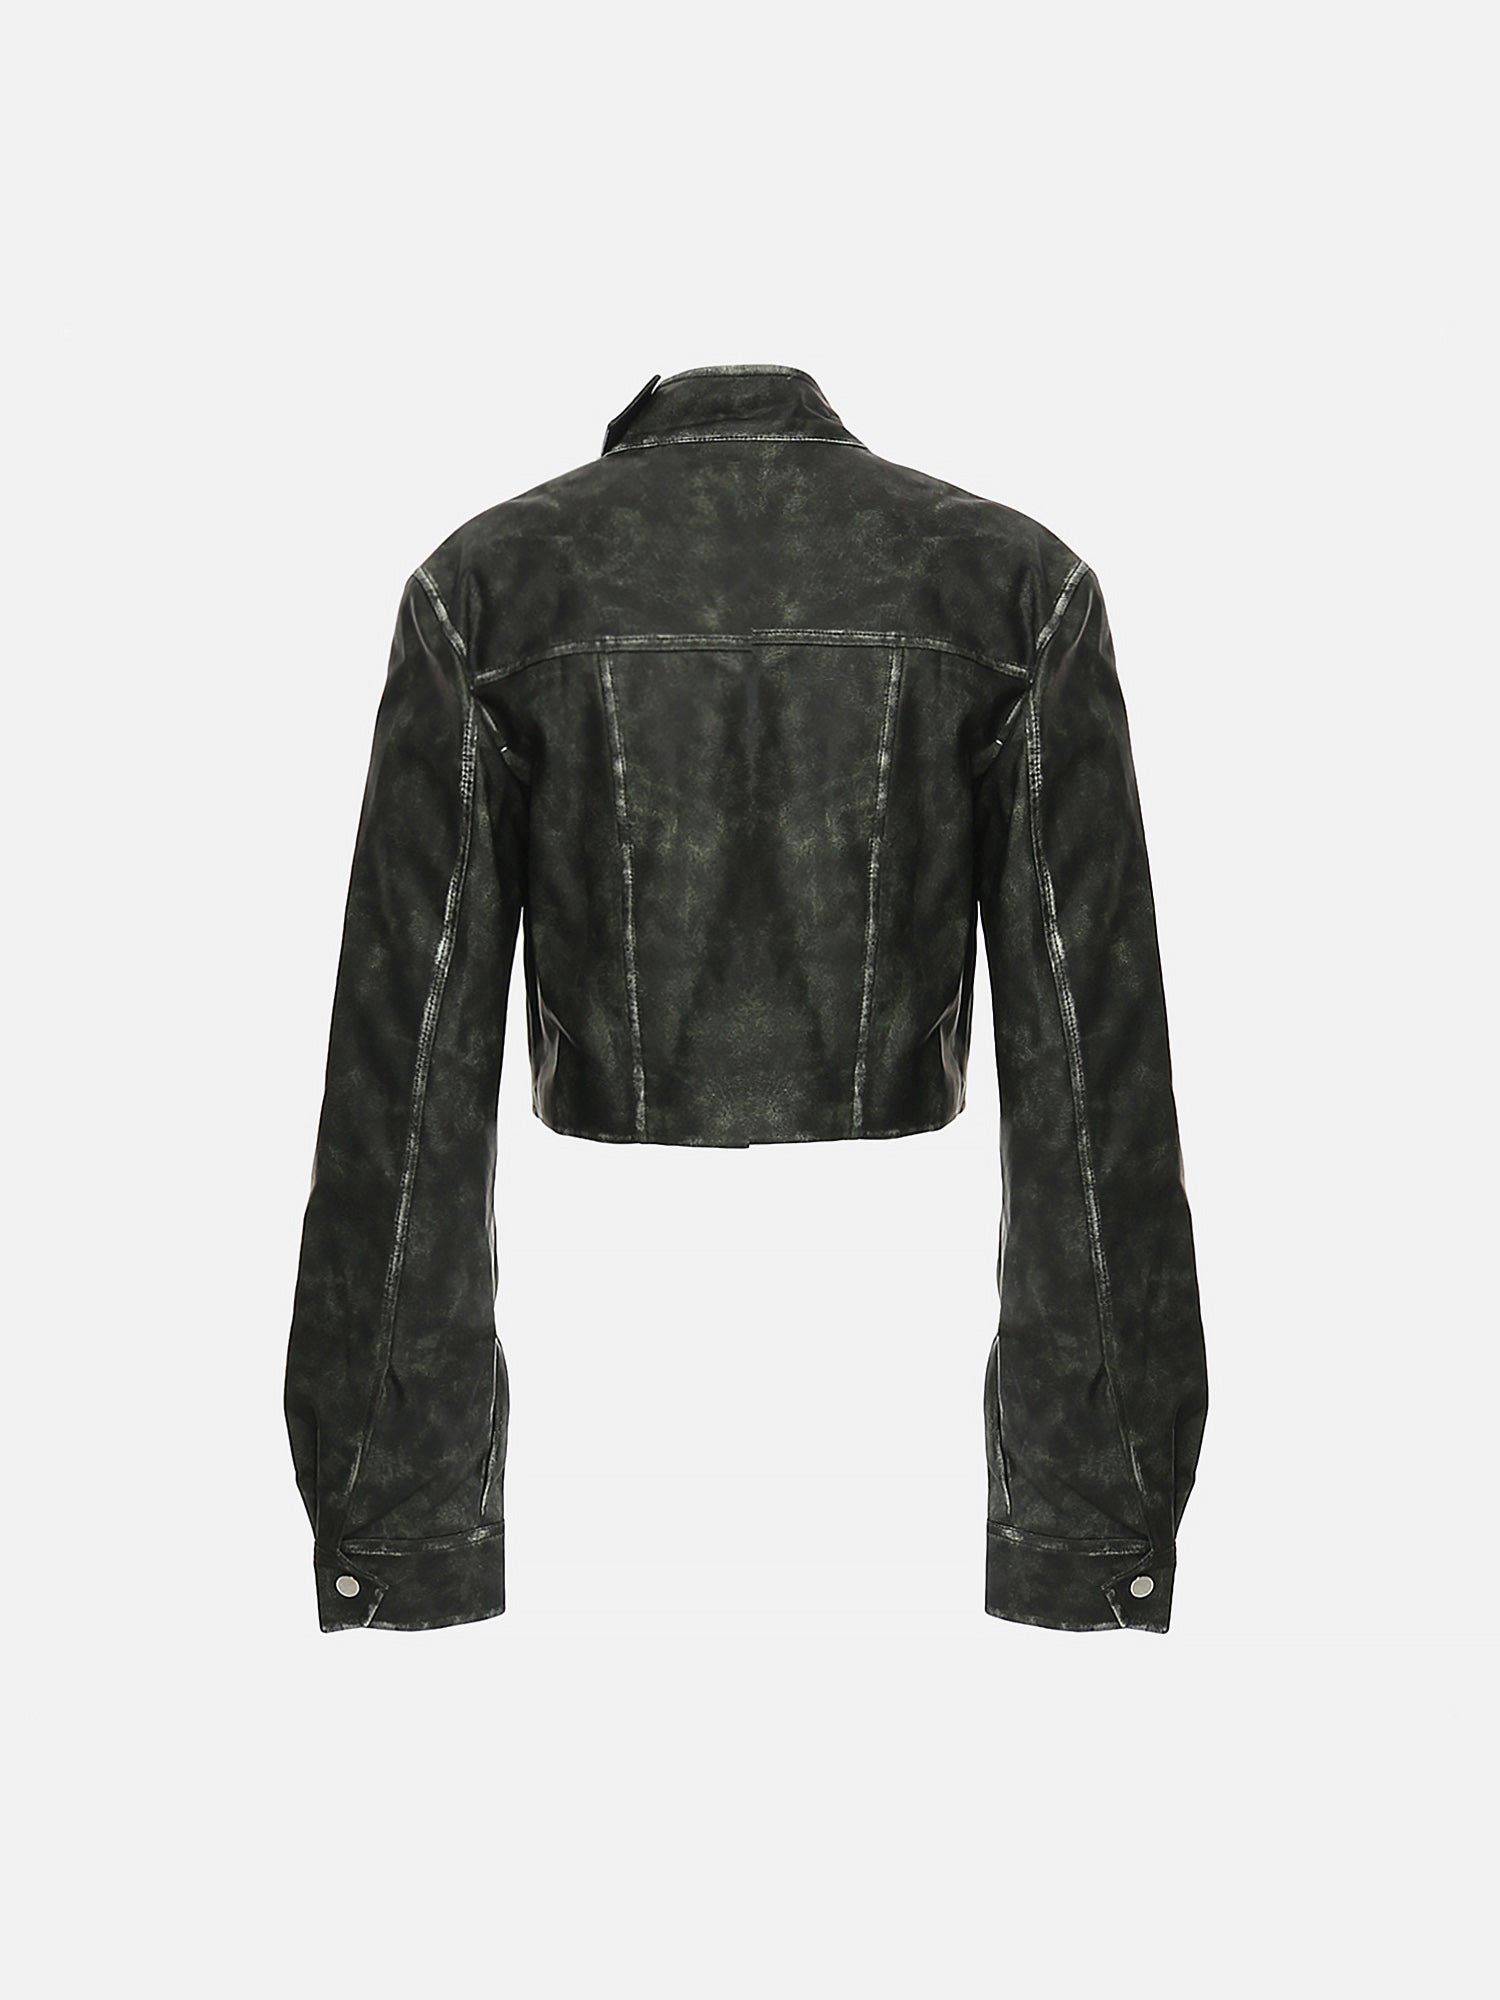 Thesupermade Personalized Irregular Cut Polished Leather Jacket